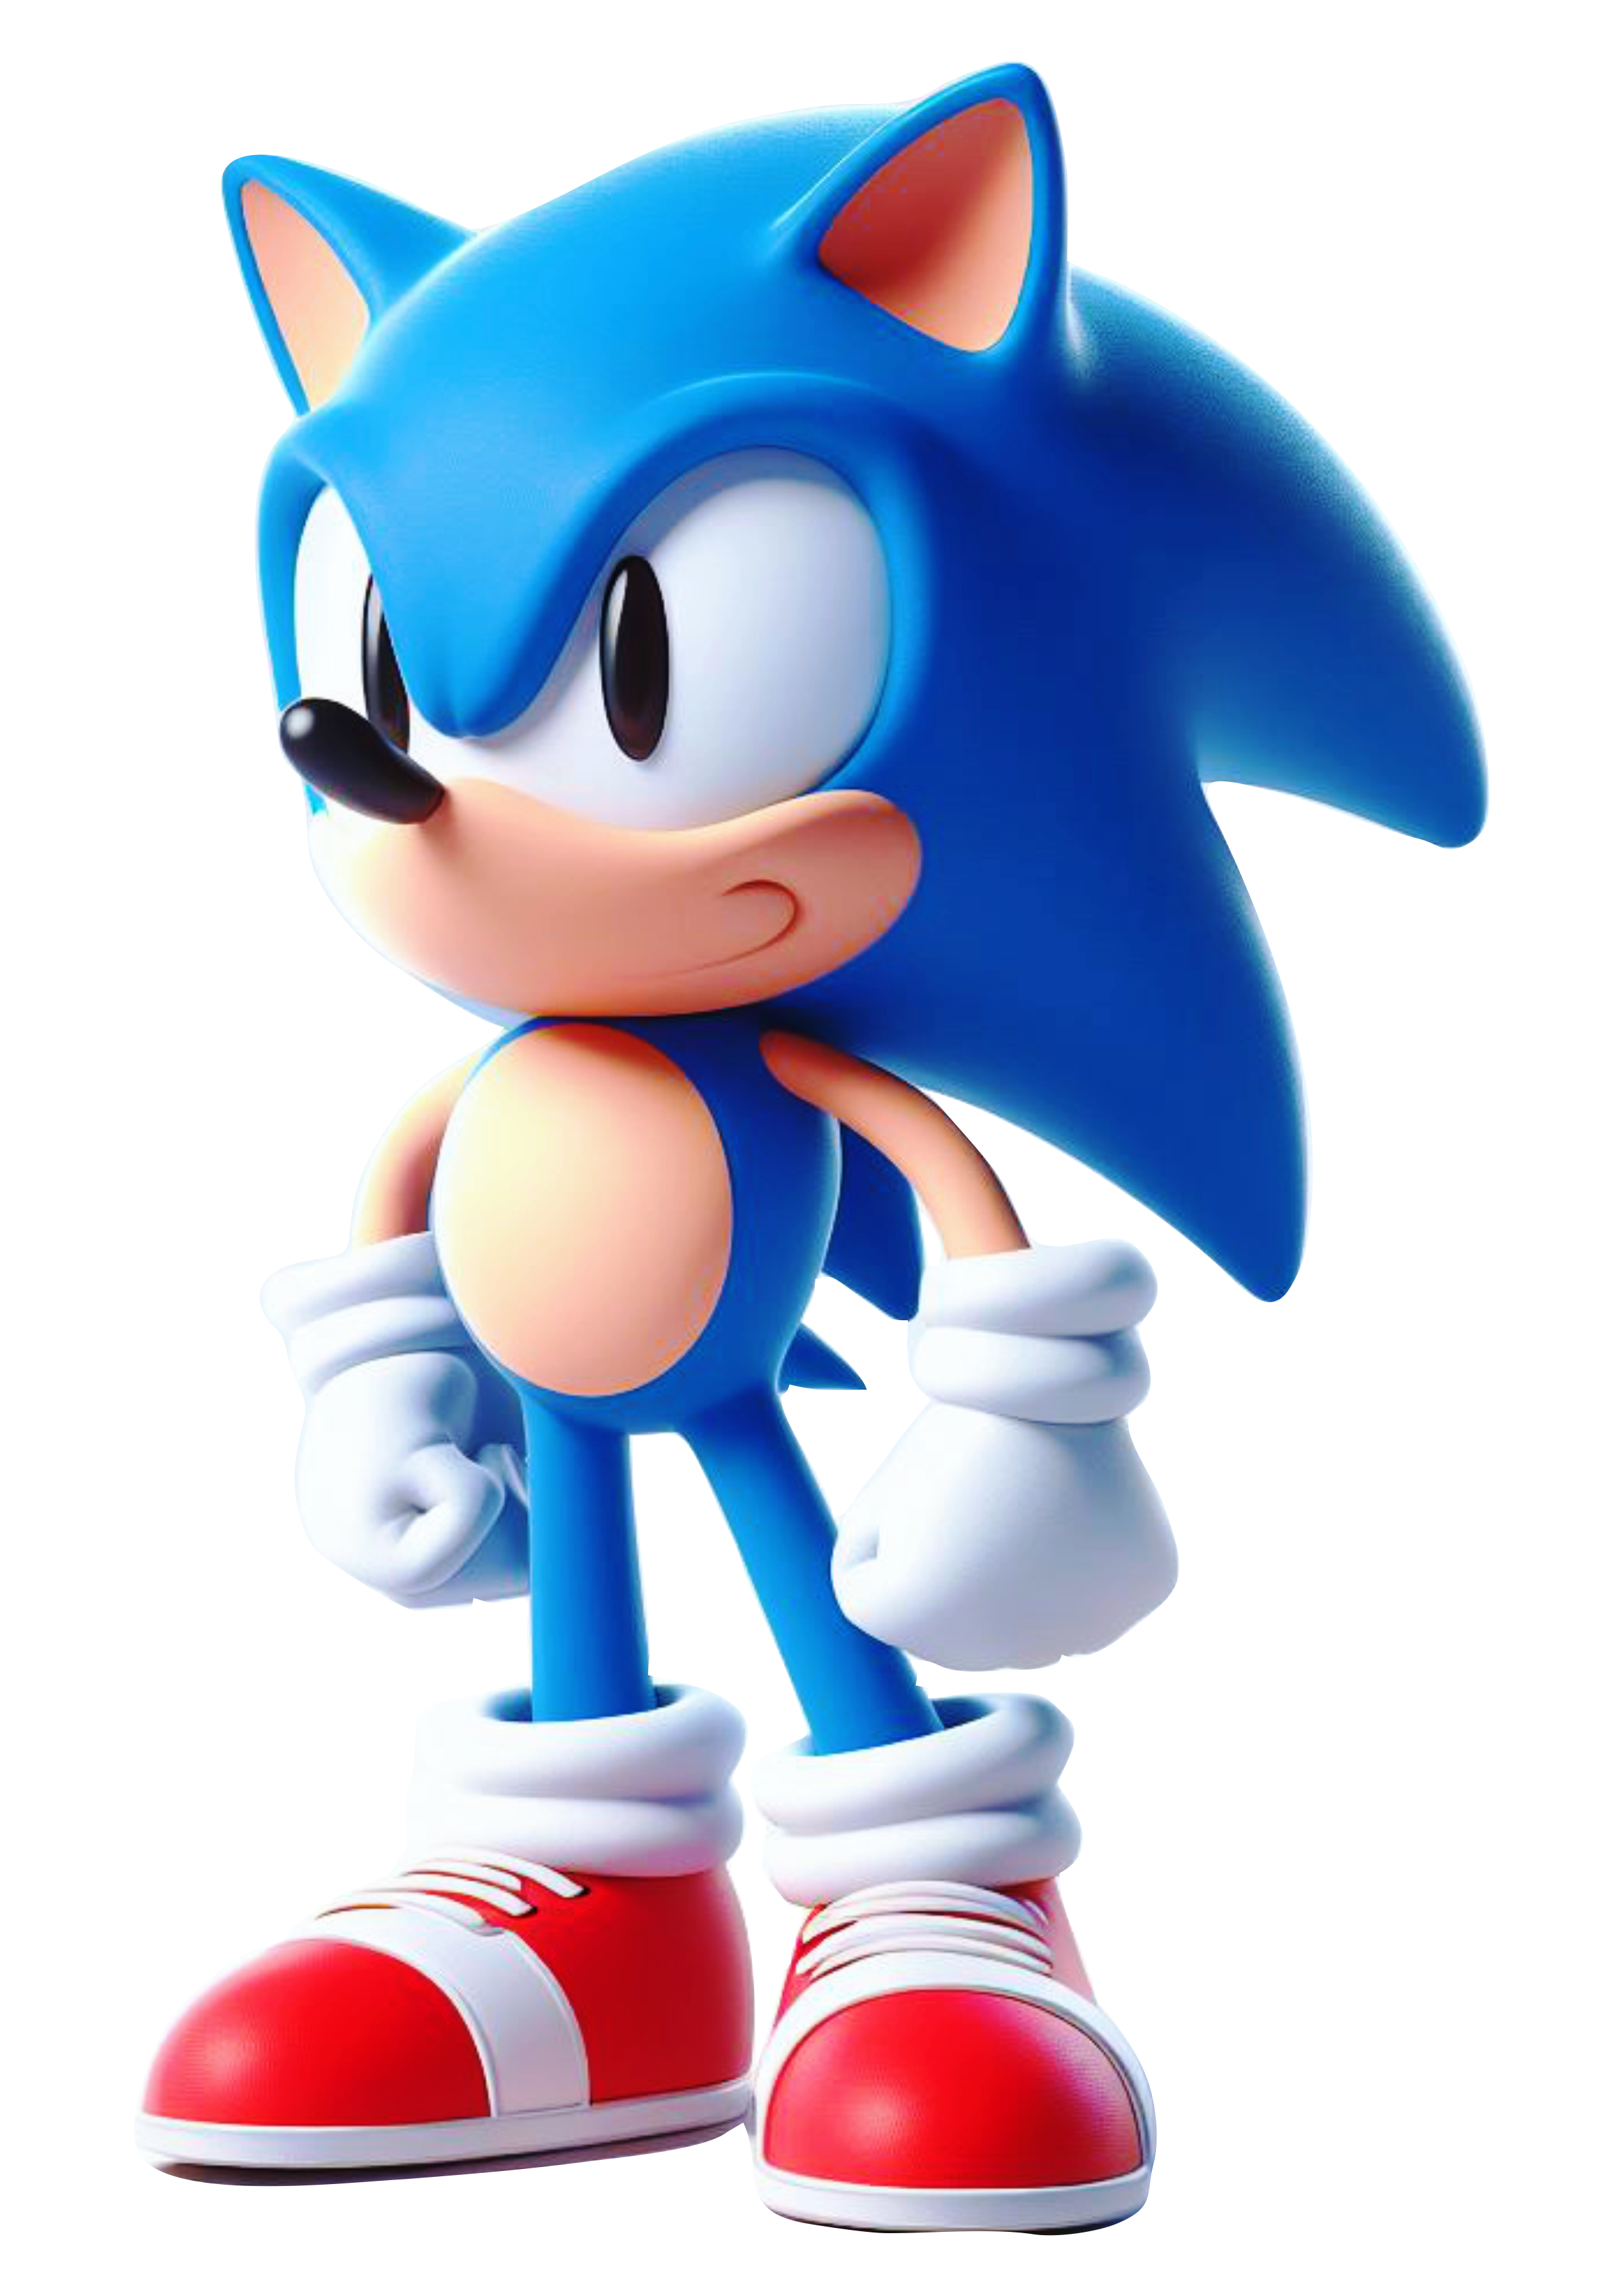 Personagem de games Sonic The Hedgehog cgi sega artes gráficas para designers fundo transparente ilustração vetor png